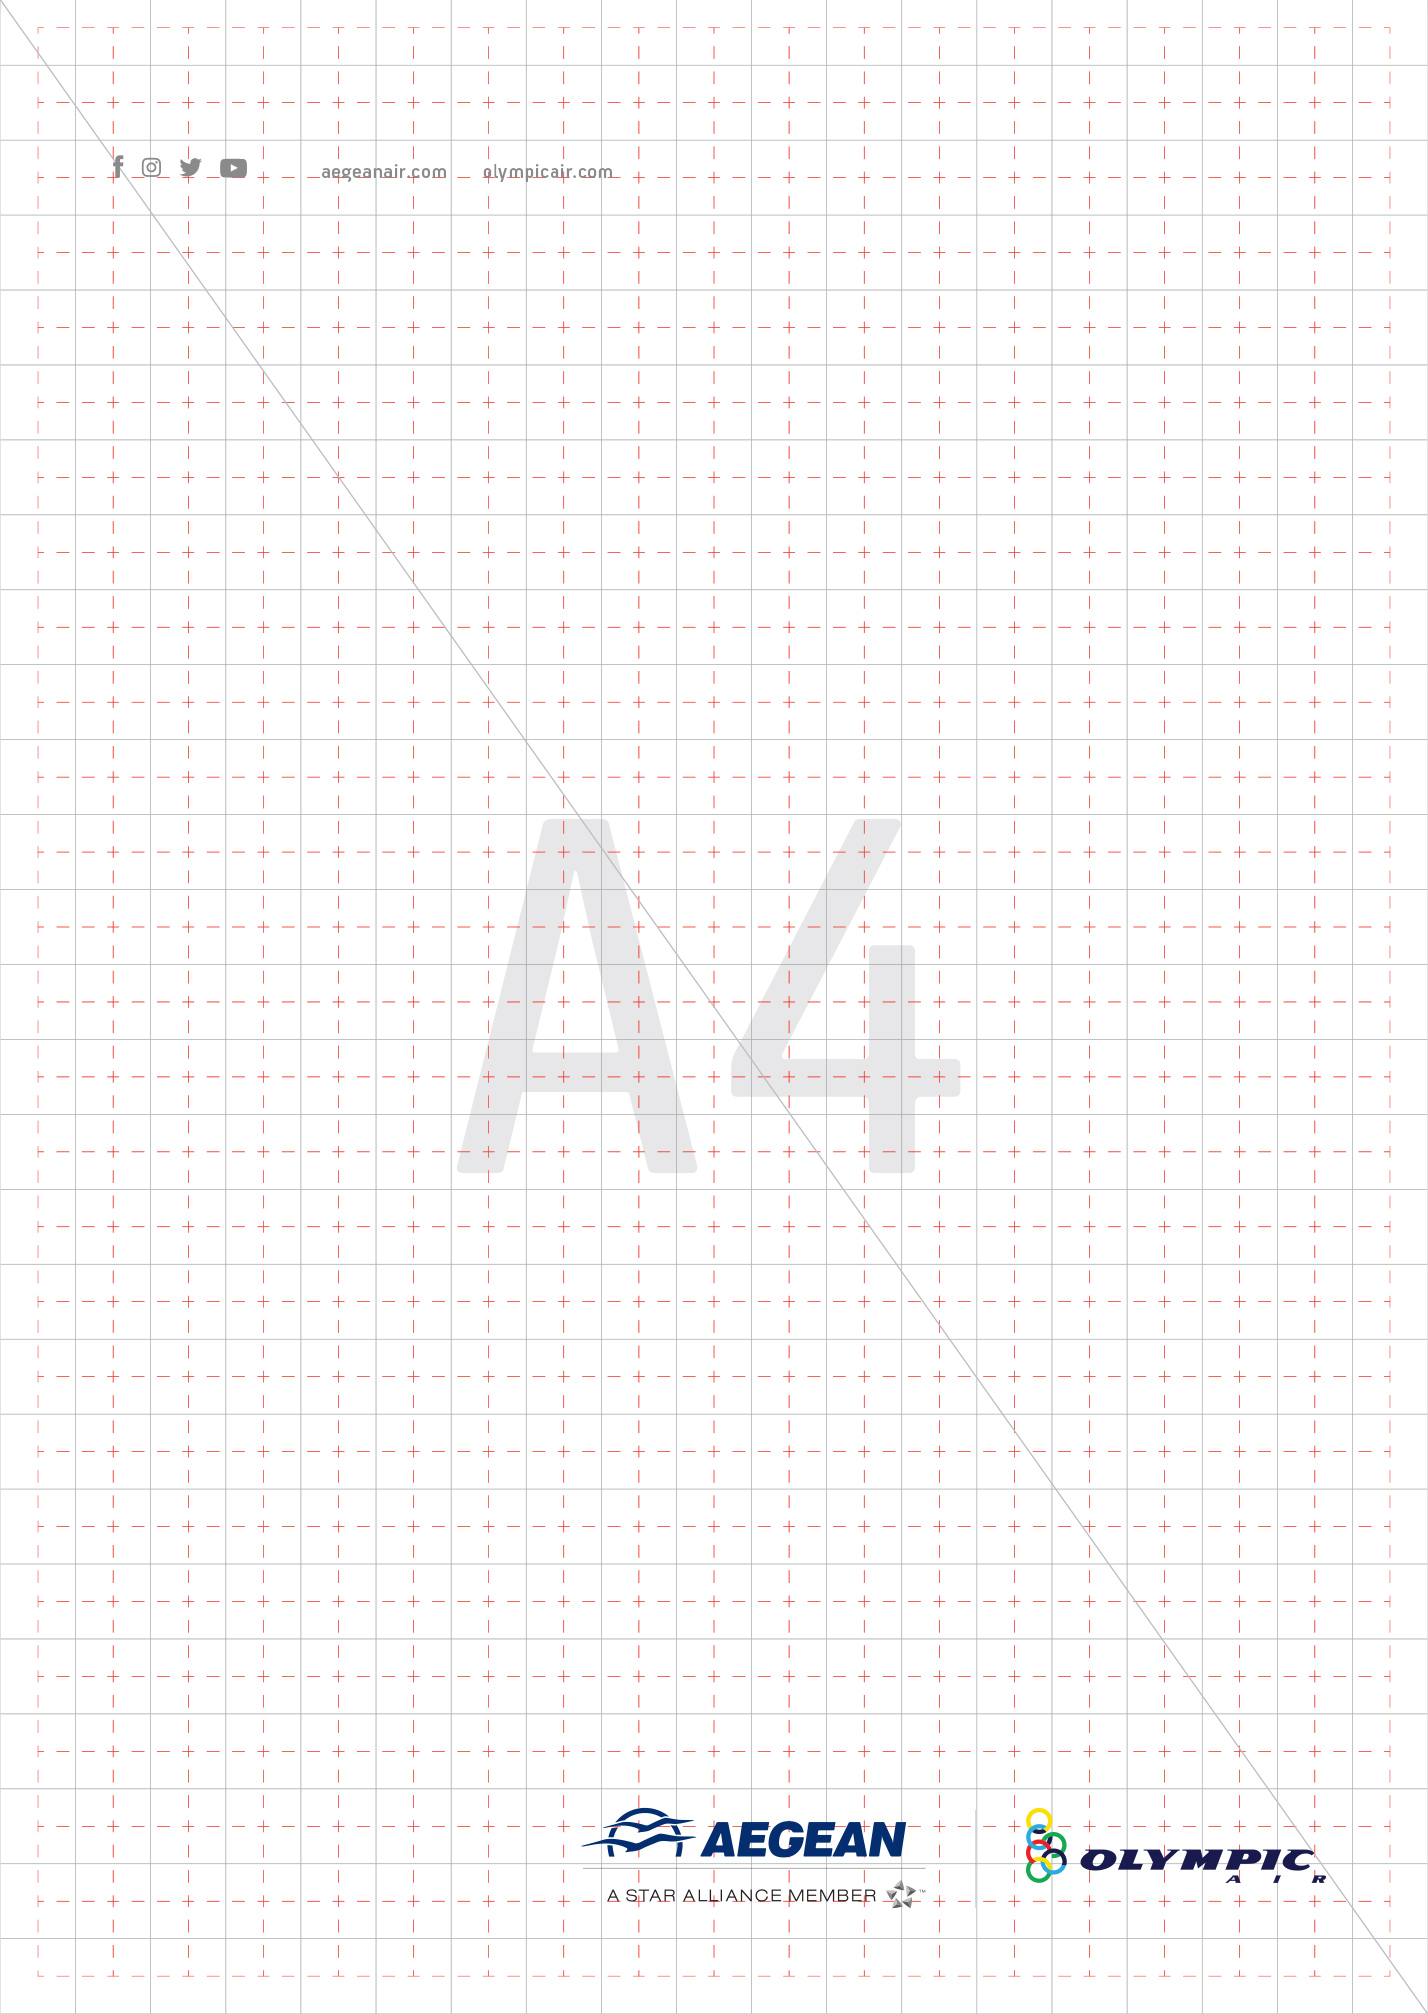 aegean air branding group print ad grid kommigraphics